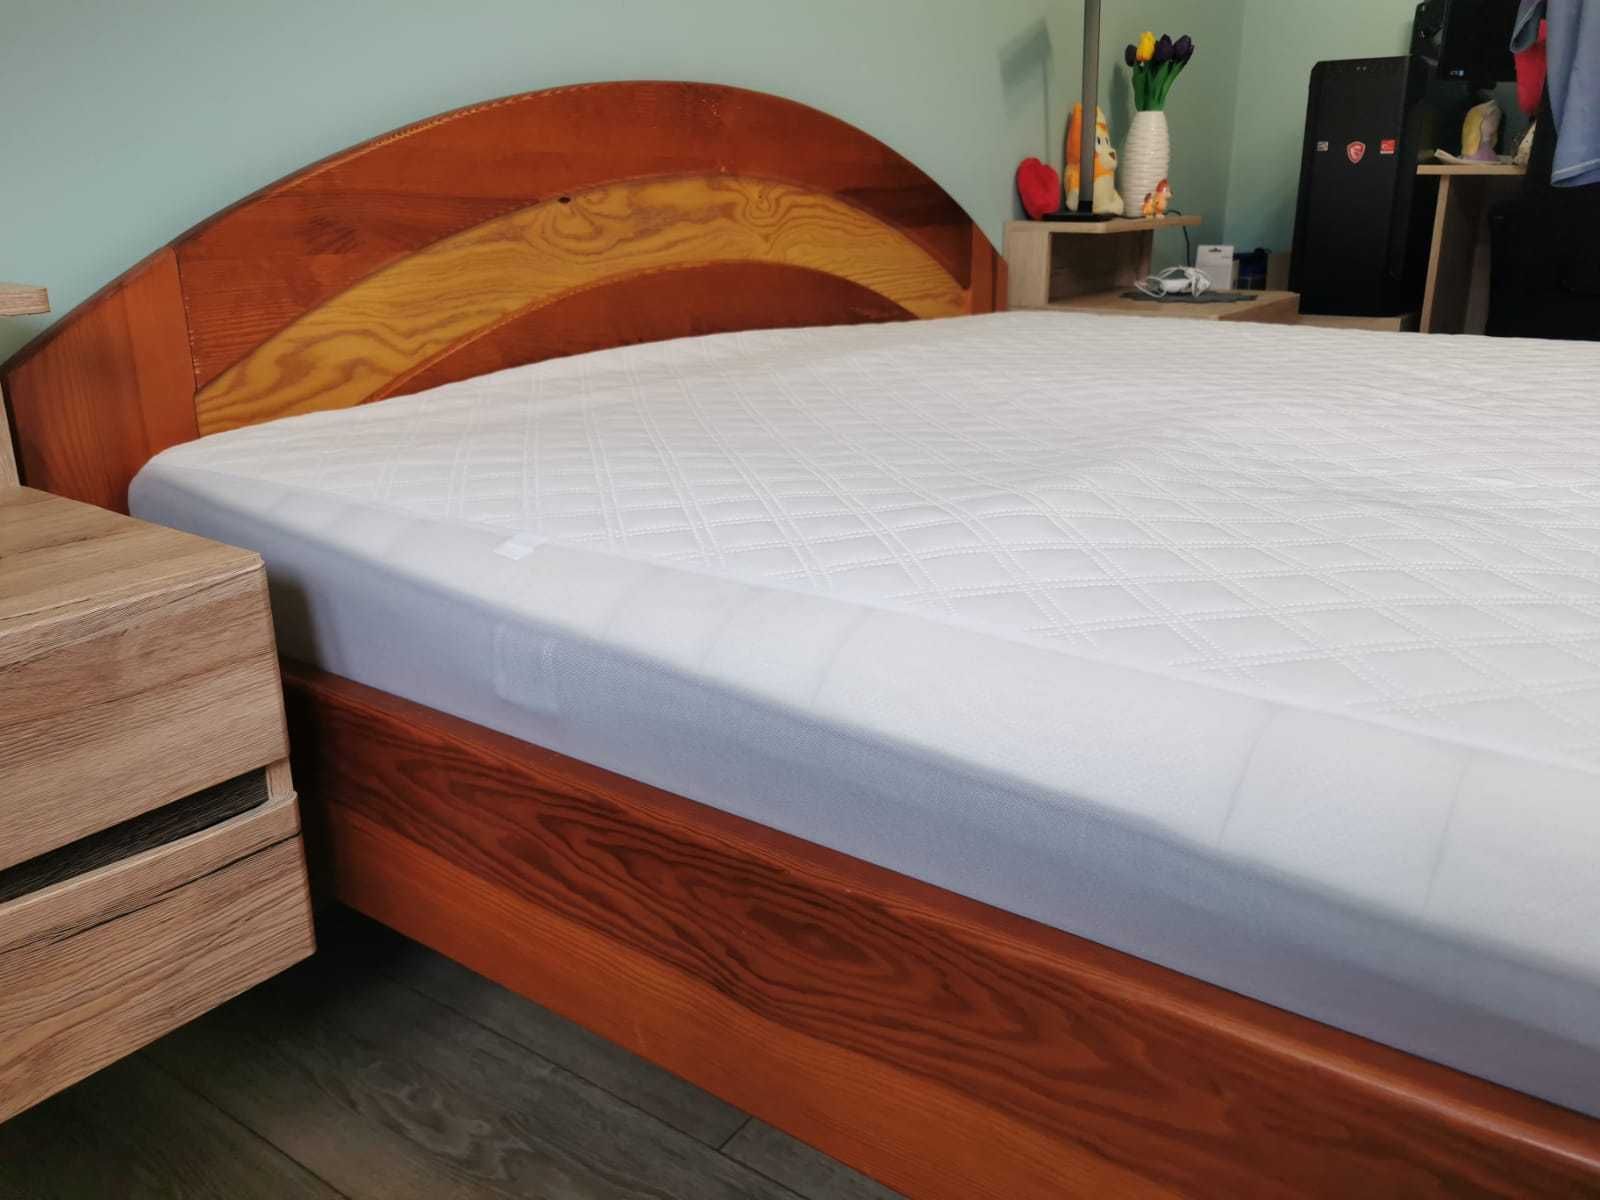 Łóżko drewniane 160x200 (bez materaca)